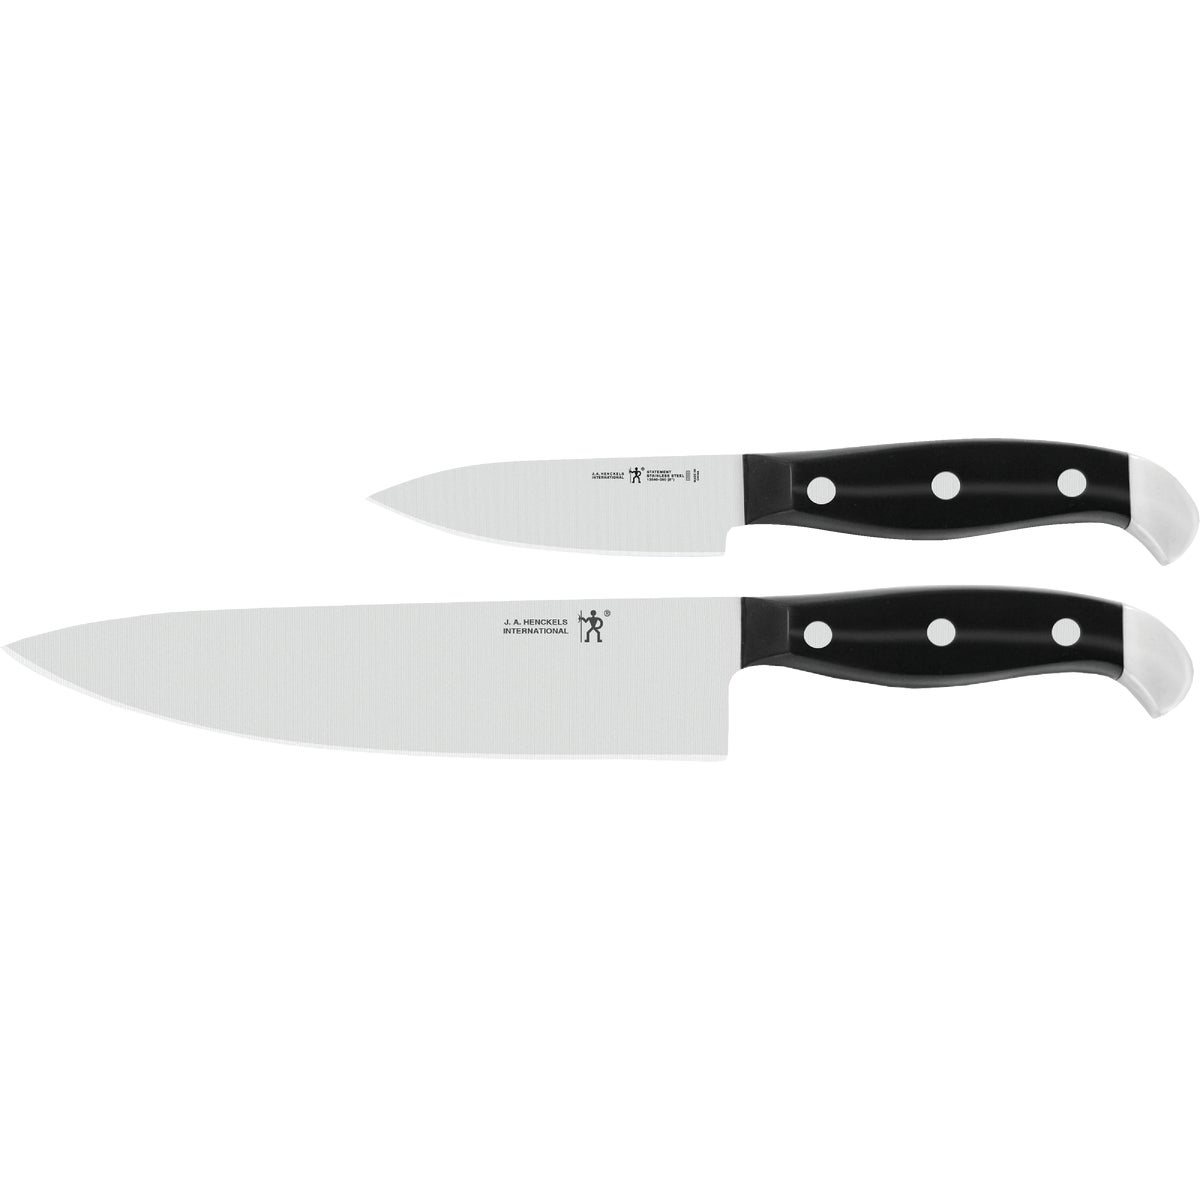 J.A. Henckels International Statement Chef Knife Set (2-Piece)